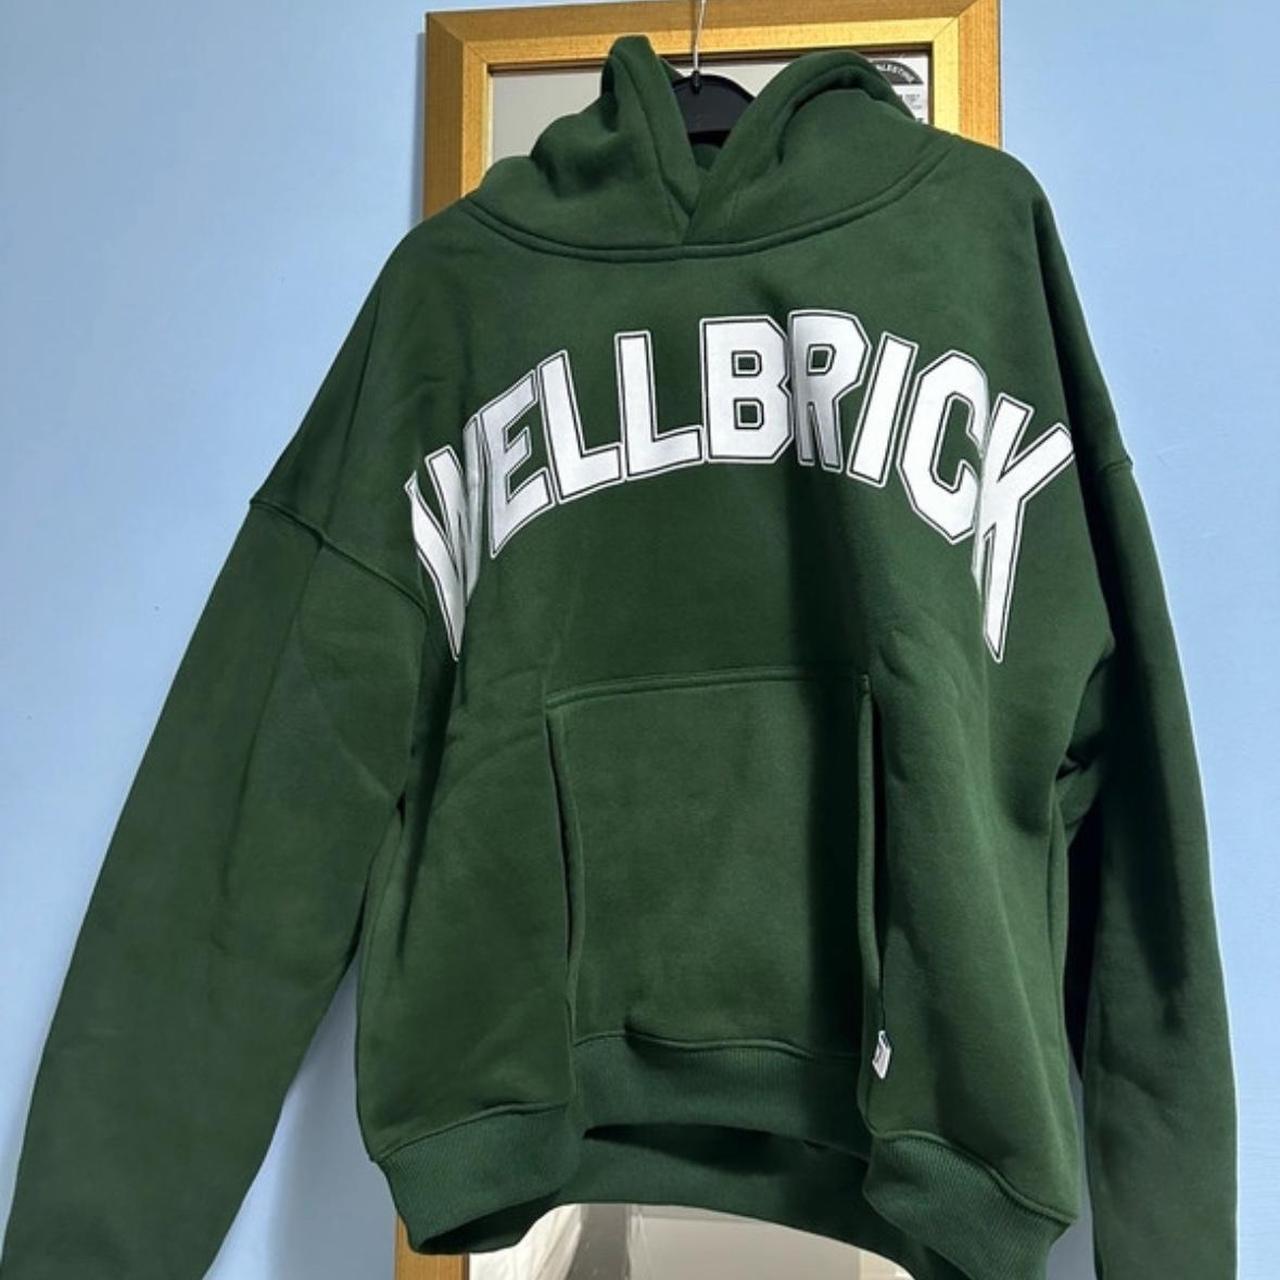 Dark Green Wellbrick Hoodie Size S UNISEX hoodie... - Depop